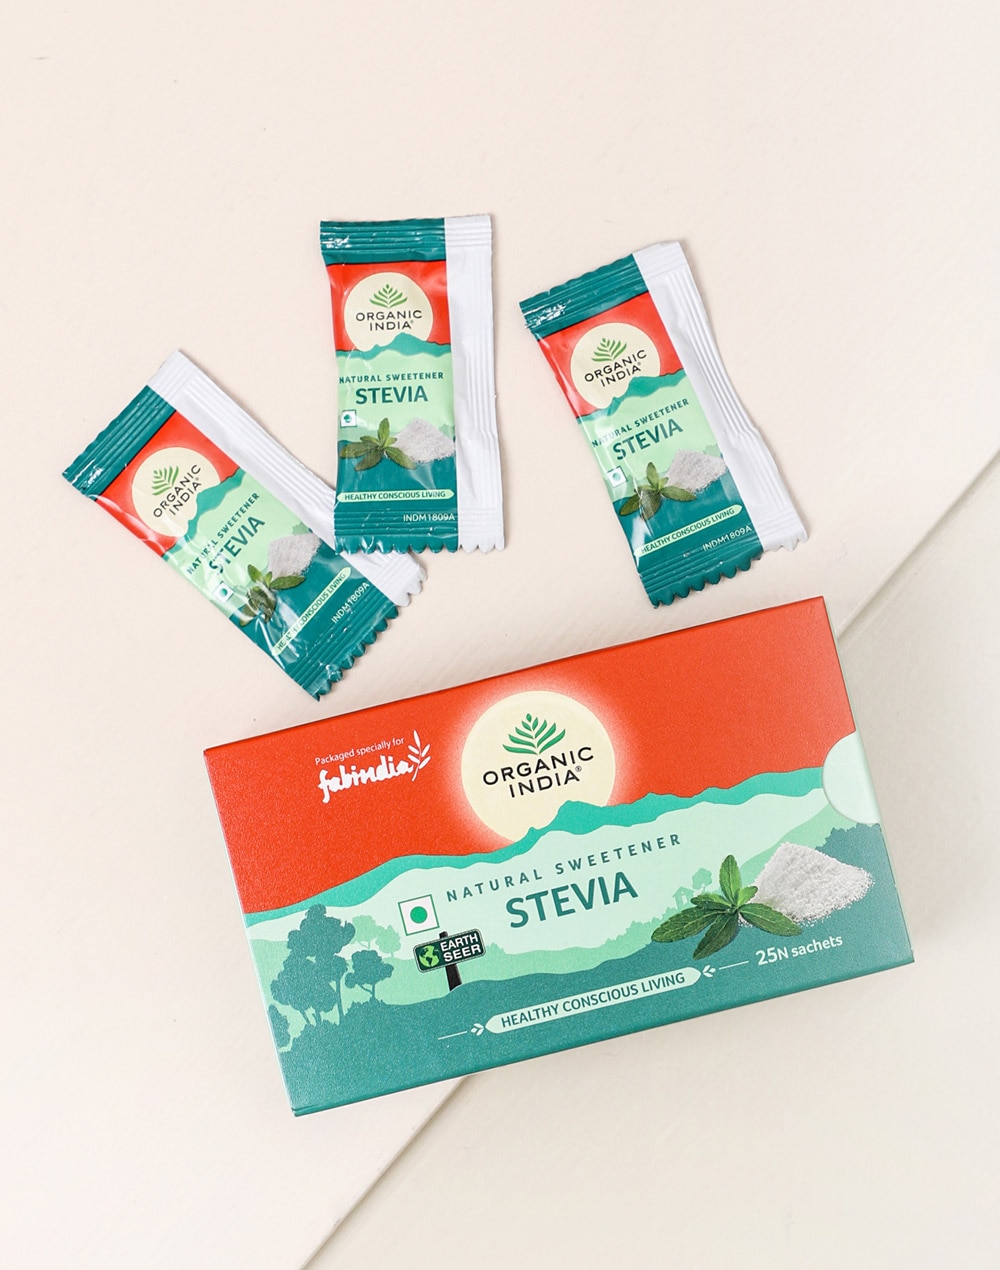 Krisda - Stévia (sweetener) 454g – Shop Santé